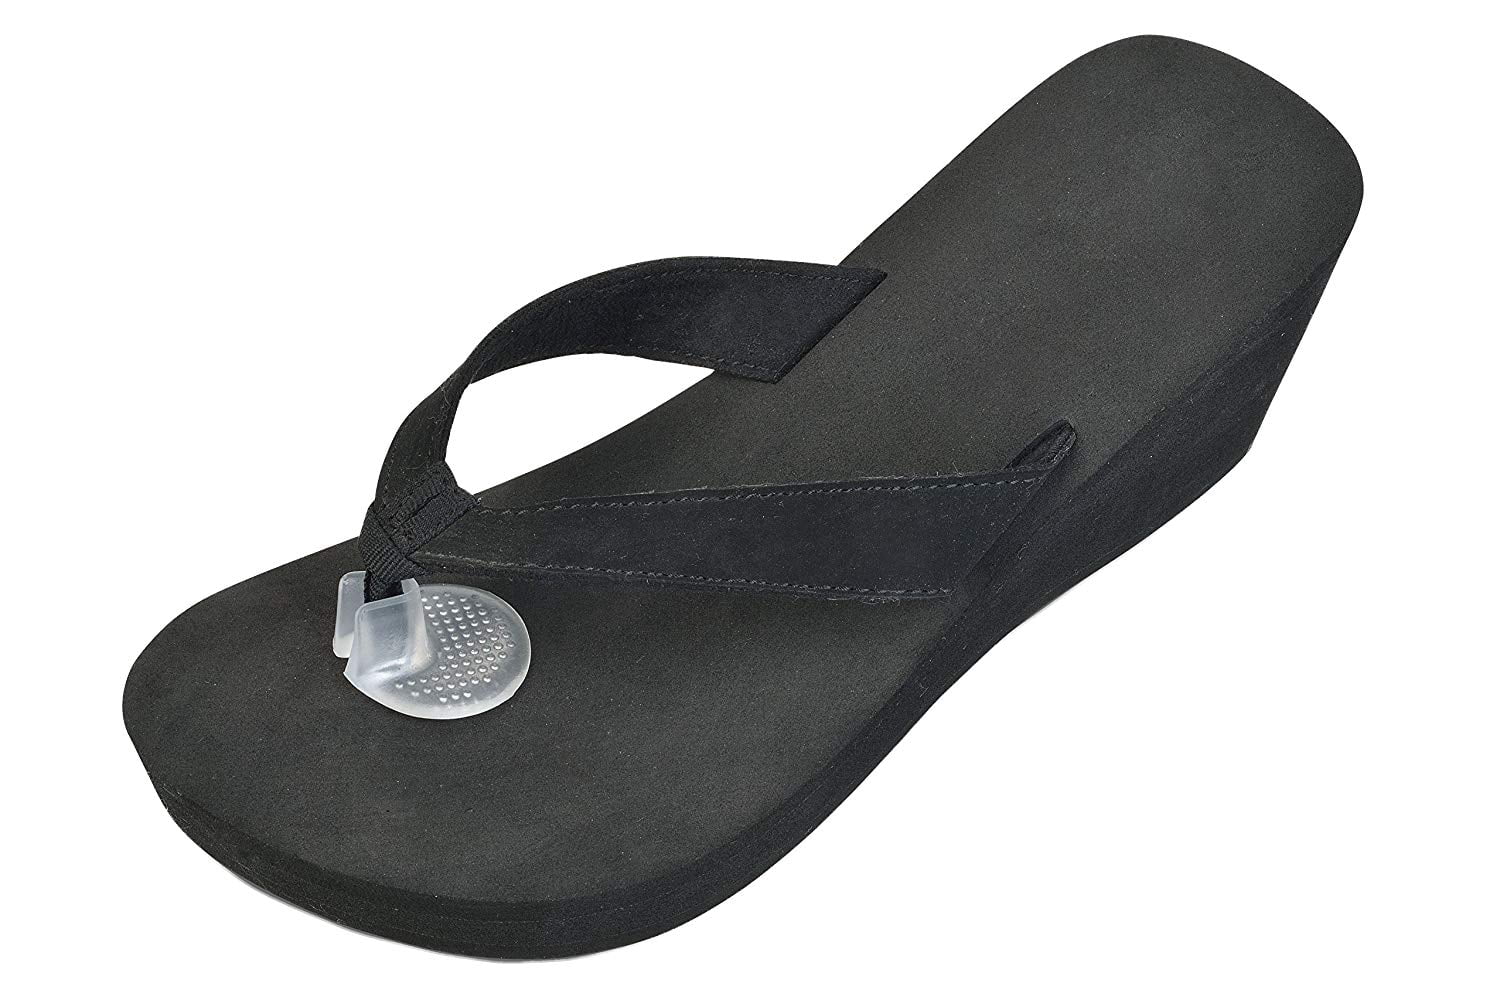 flip flop toe protectors